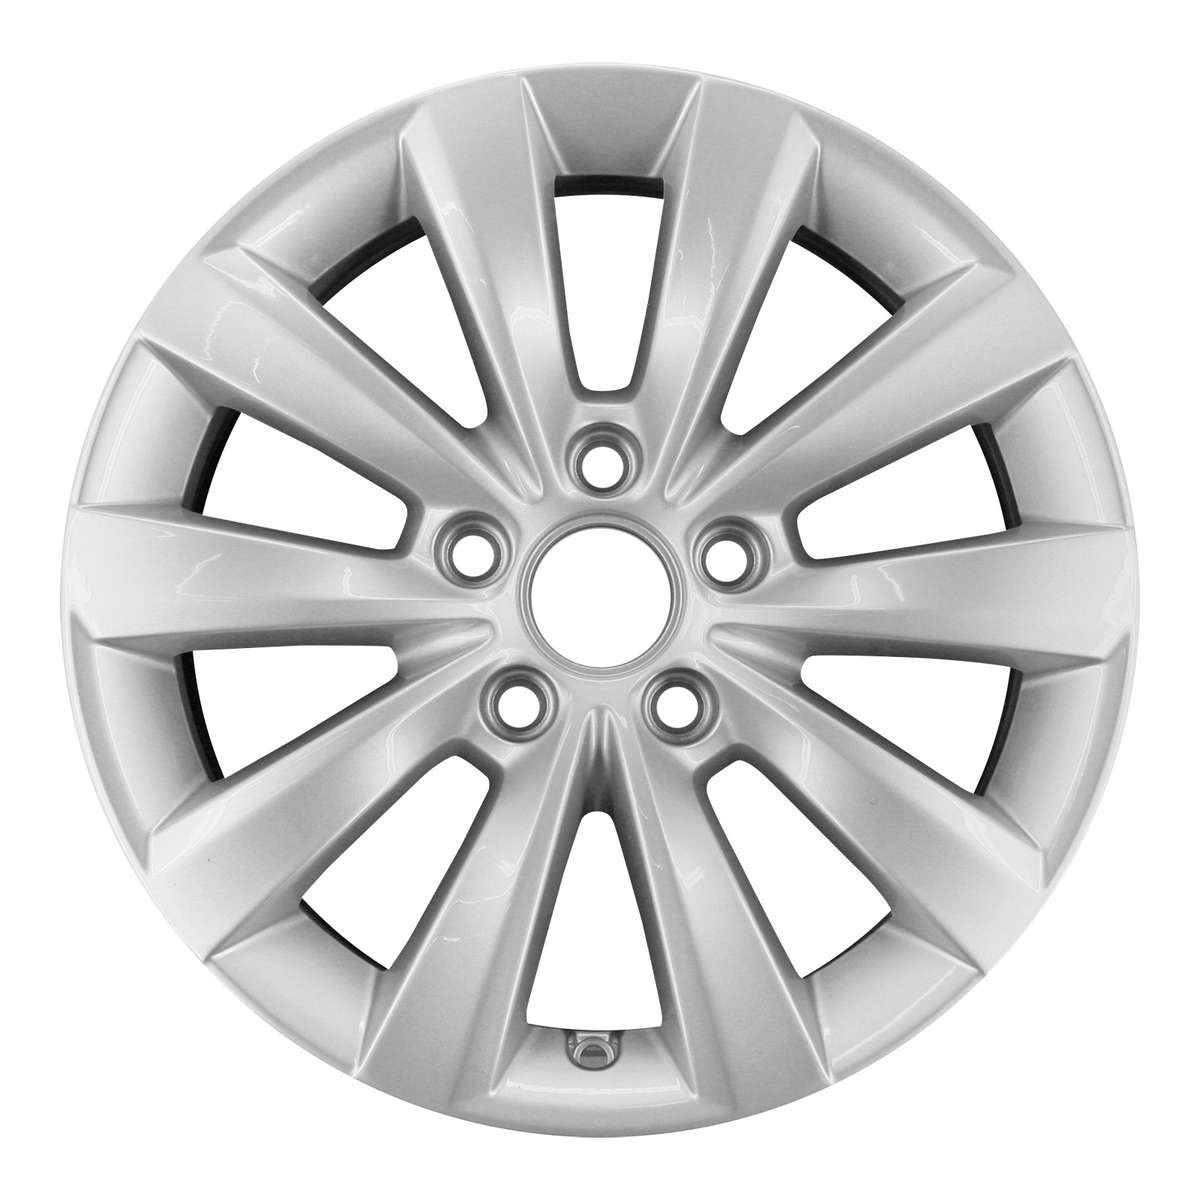 2013 Volkswagen Passat New 16" Replacement Wheel Rim RW69927S